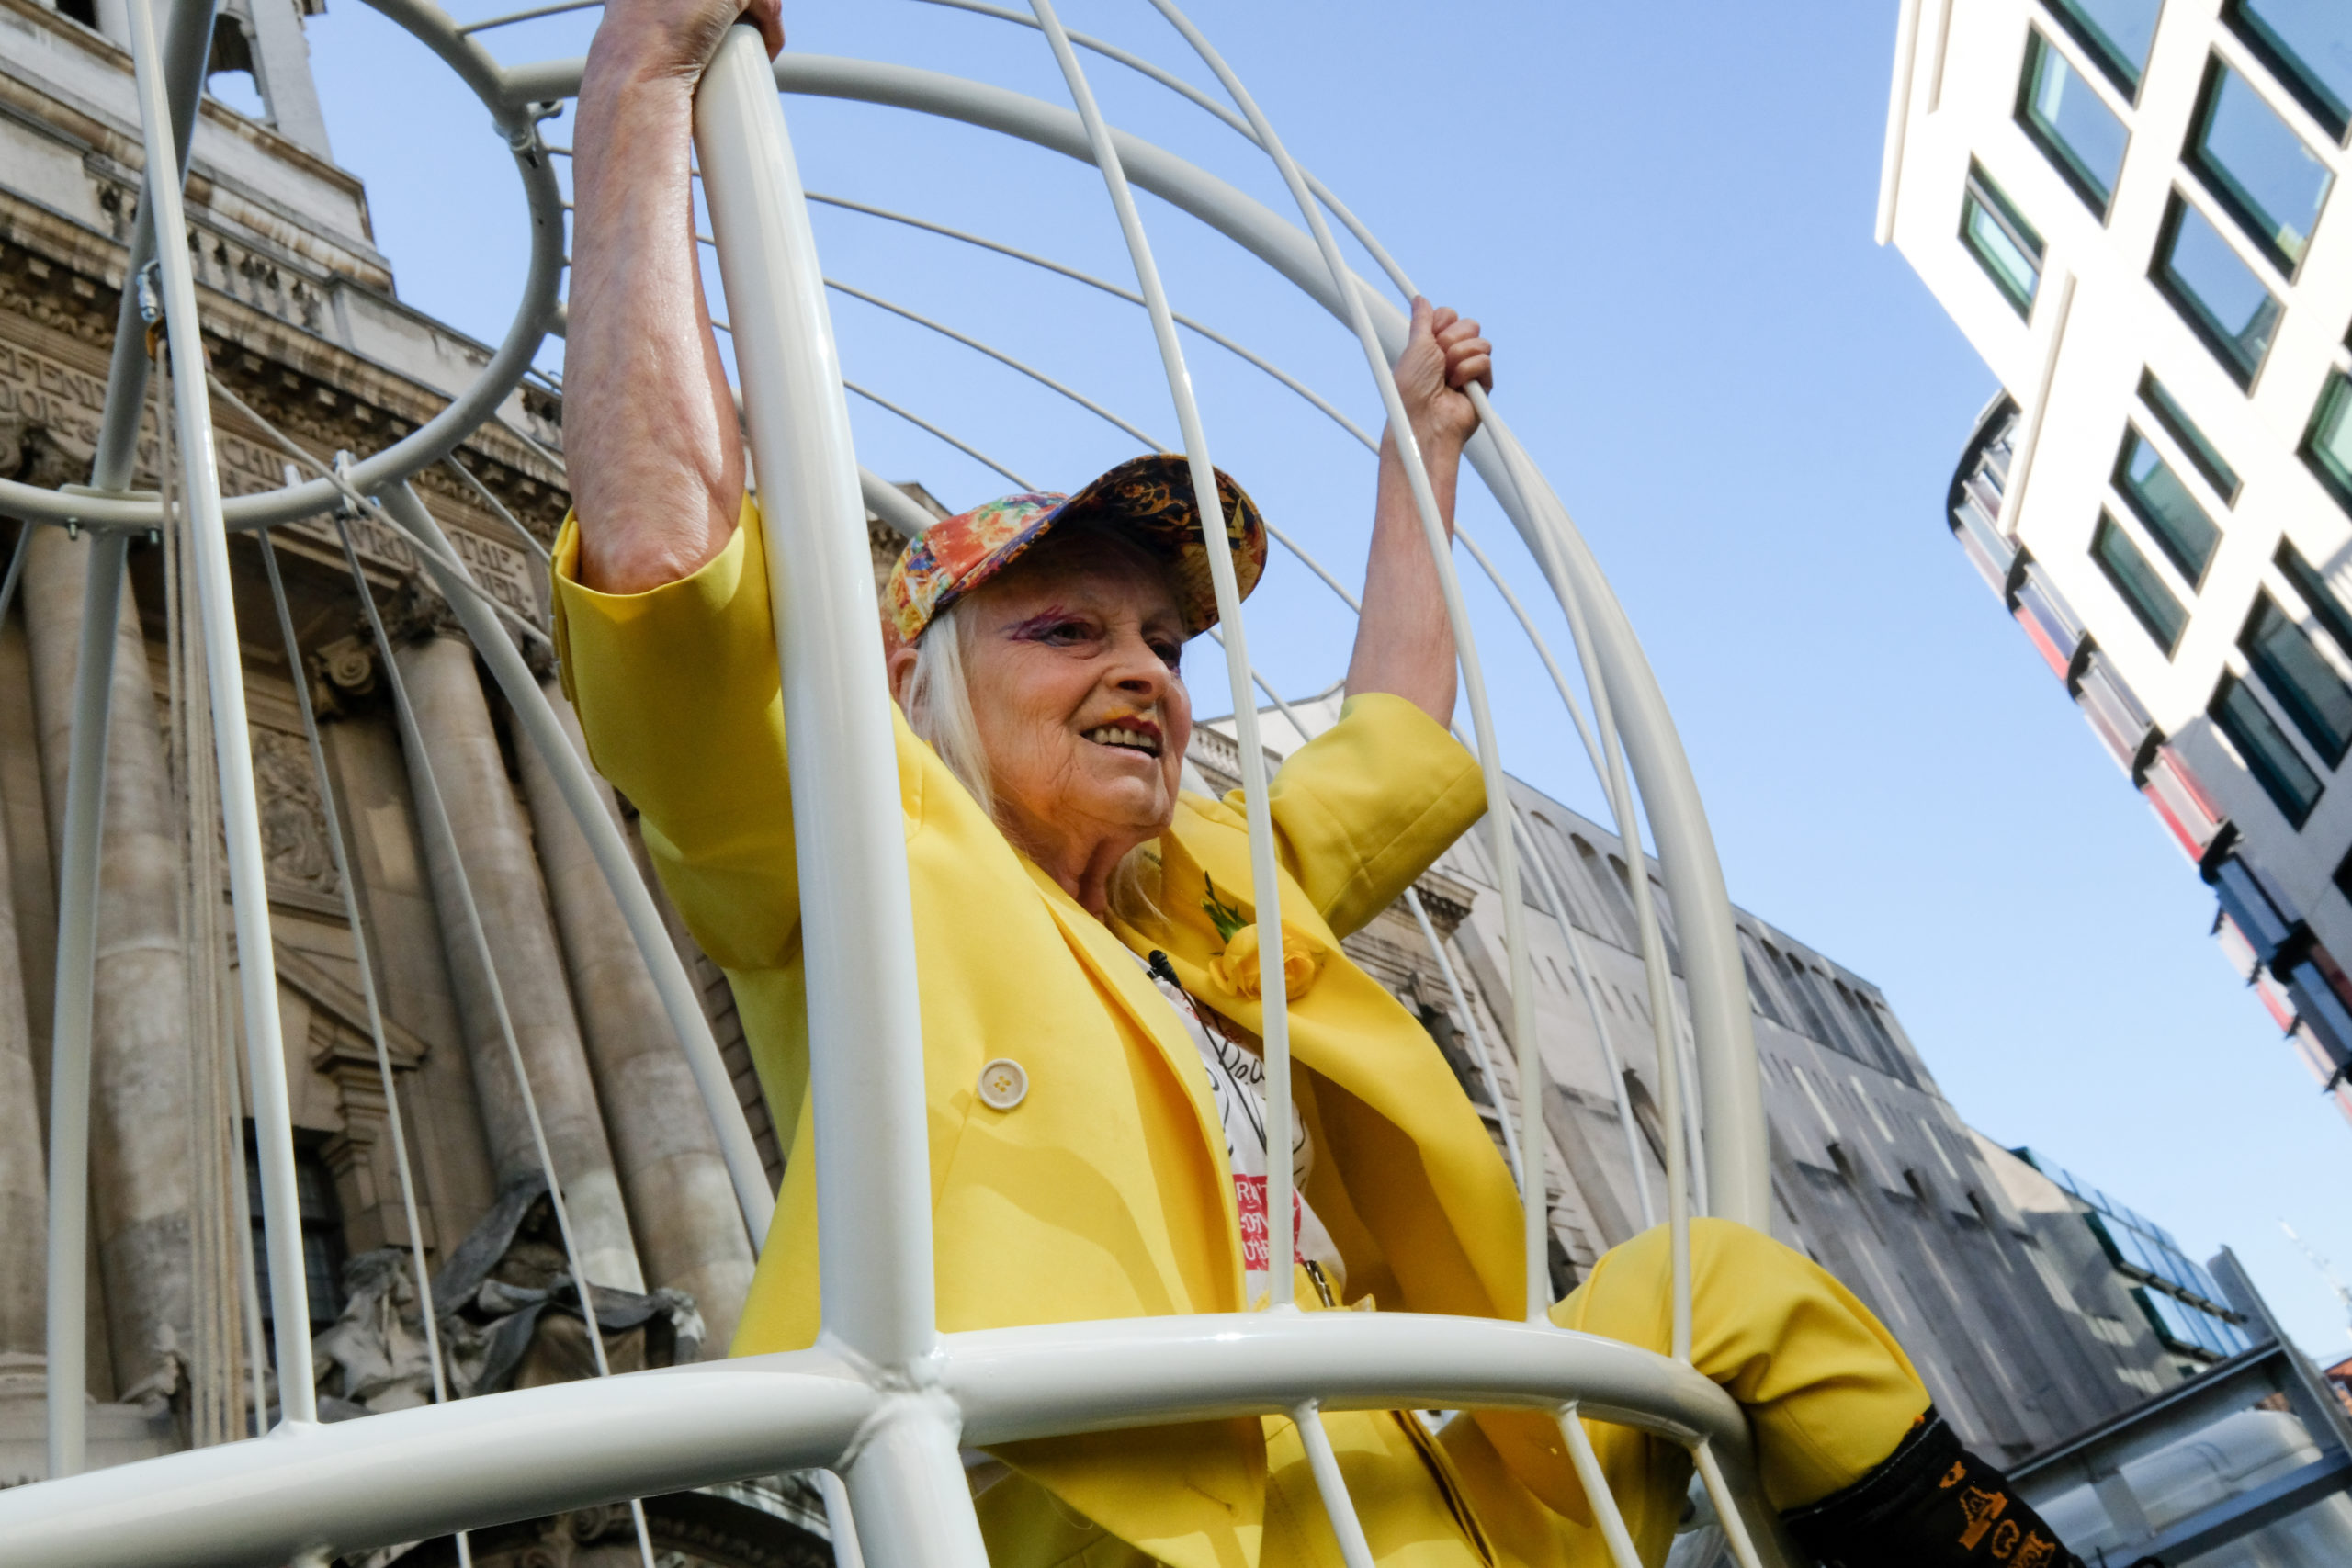 Vivienne Westwood swings inside giant birdcage to support Julian